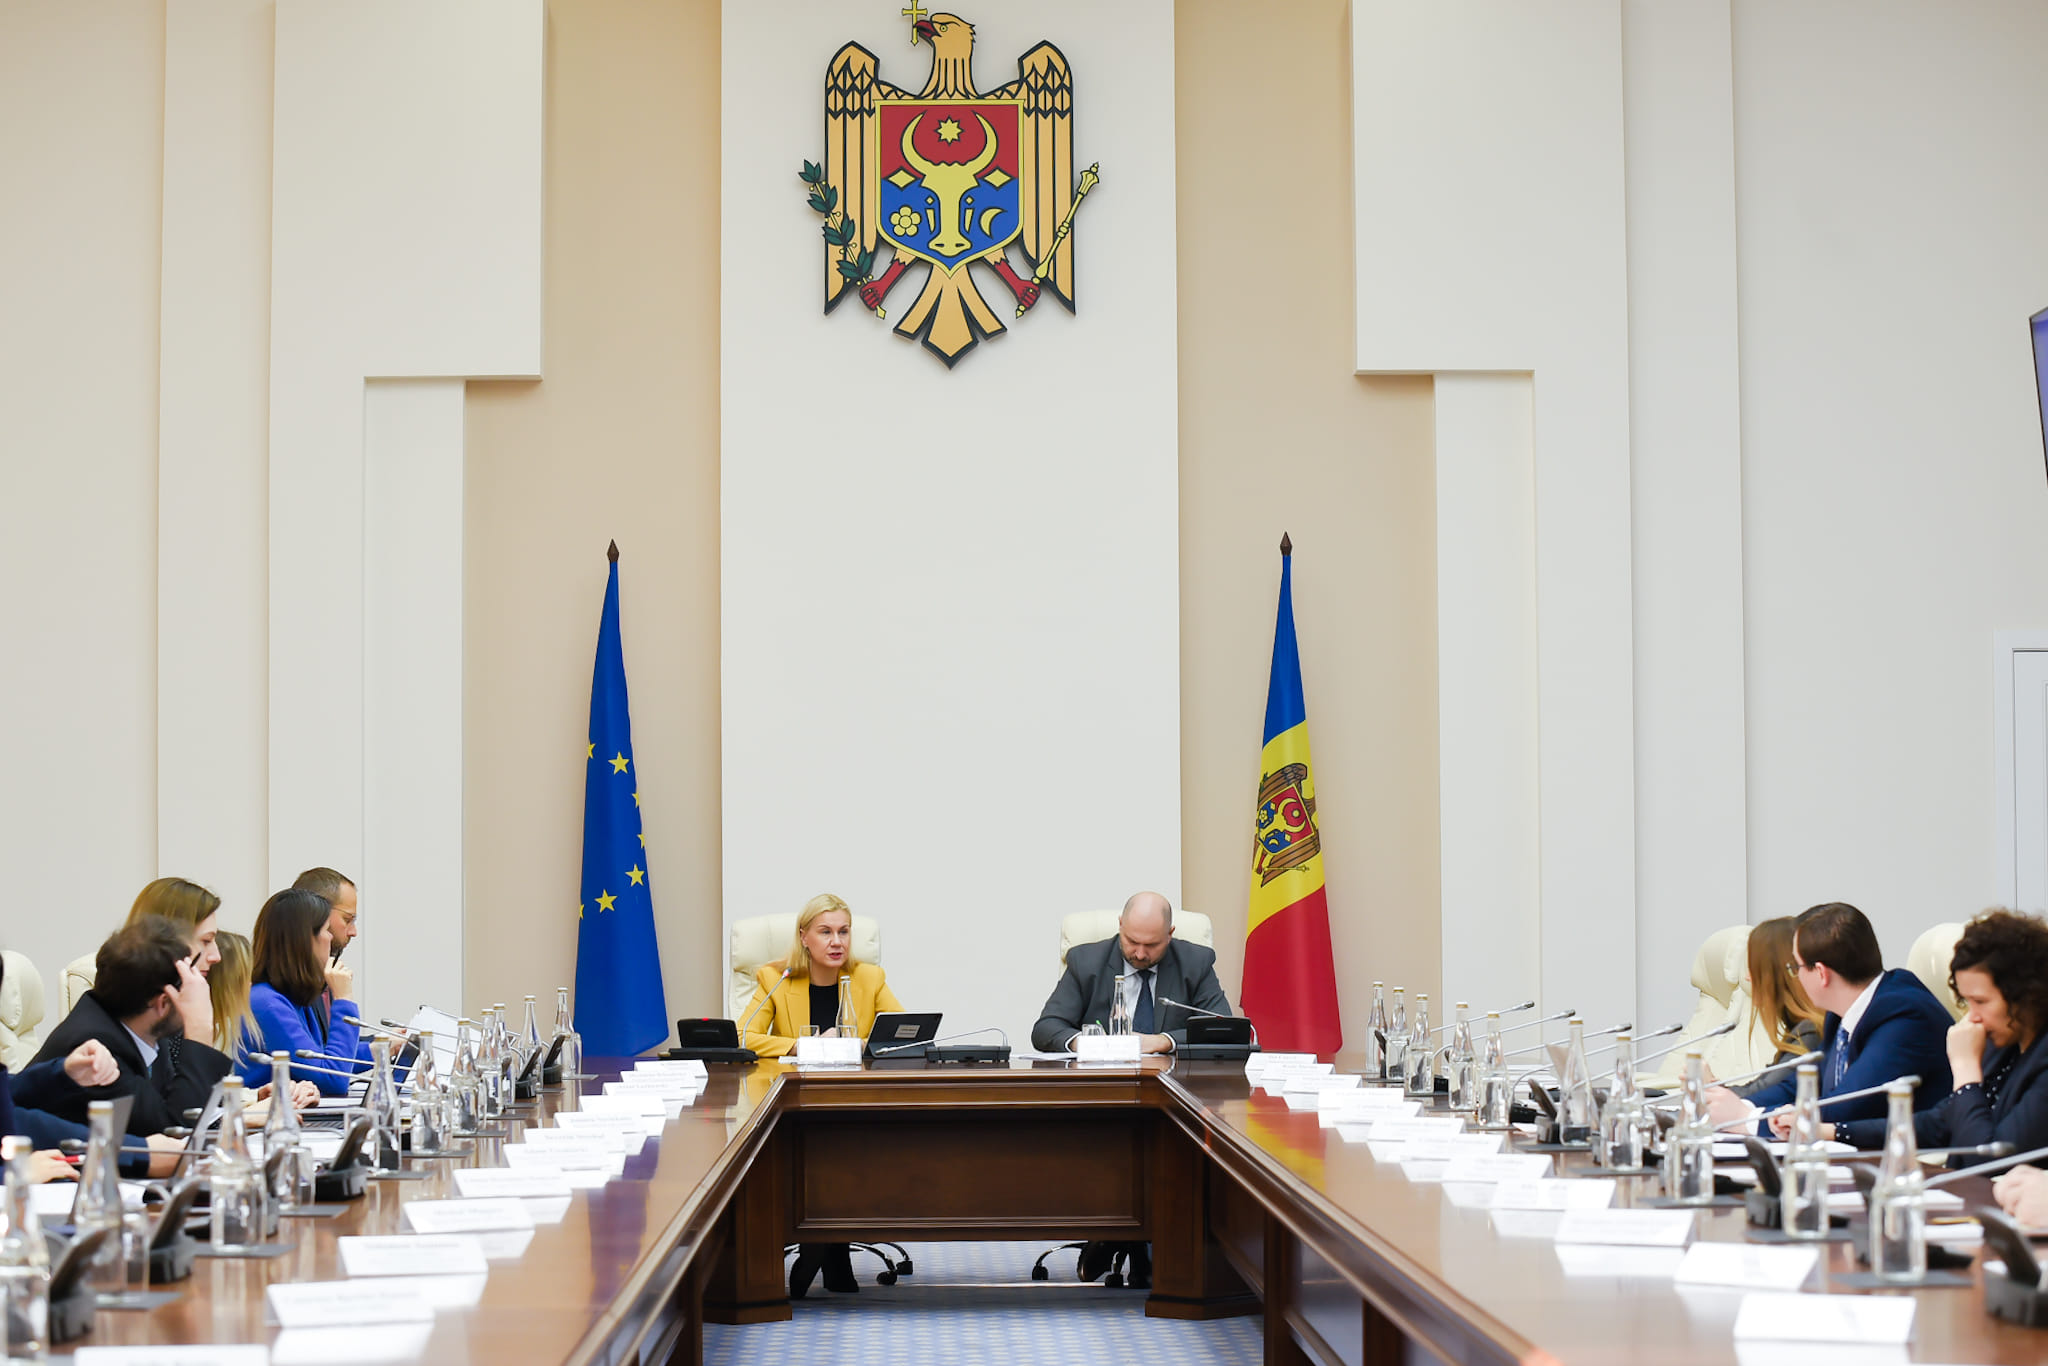 NM Espresso: Молдова обсудила энергетику с ЕС, мунсовет Кишинева позаседал со скандалом, а посол Украины не заметил слежку